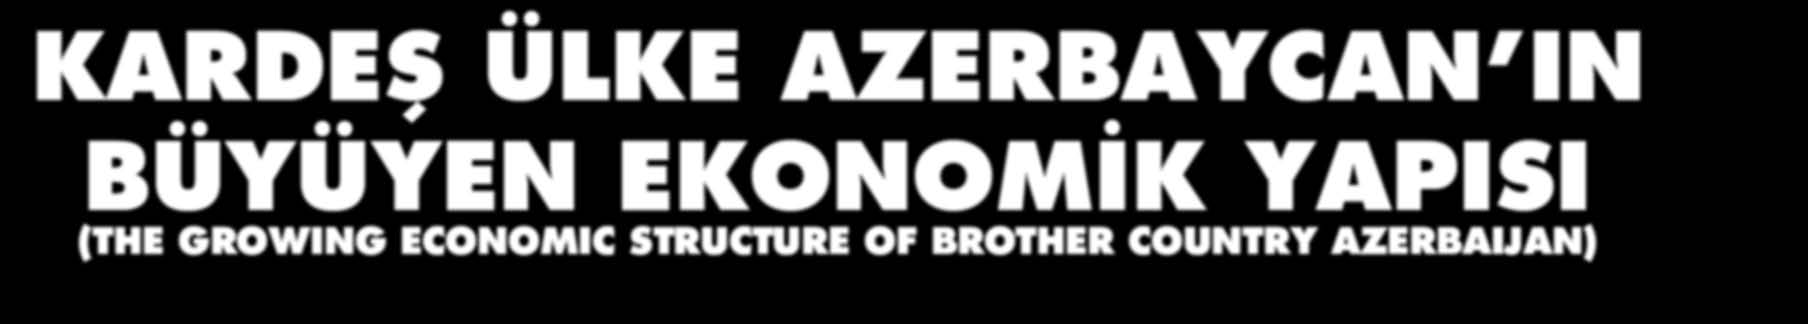 KARDEŞ ÜLKE AZERBAYCAN IN BÜYÜYEN EKONOMİK YAPISI (THE GROWING ECONOMIC STRUCTURE OF BROTHER COUNTRY AZERBAIJAN) ÖZET: Azerbaycan bağımsızlıktan kısa süre sonra ekonomik istikrarı tam olarak